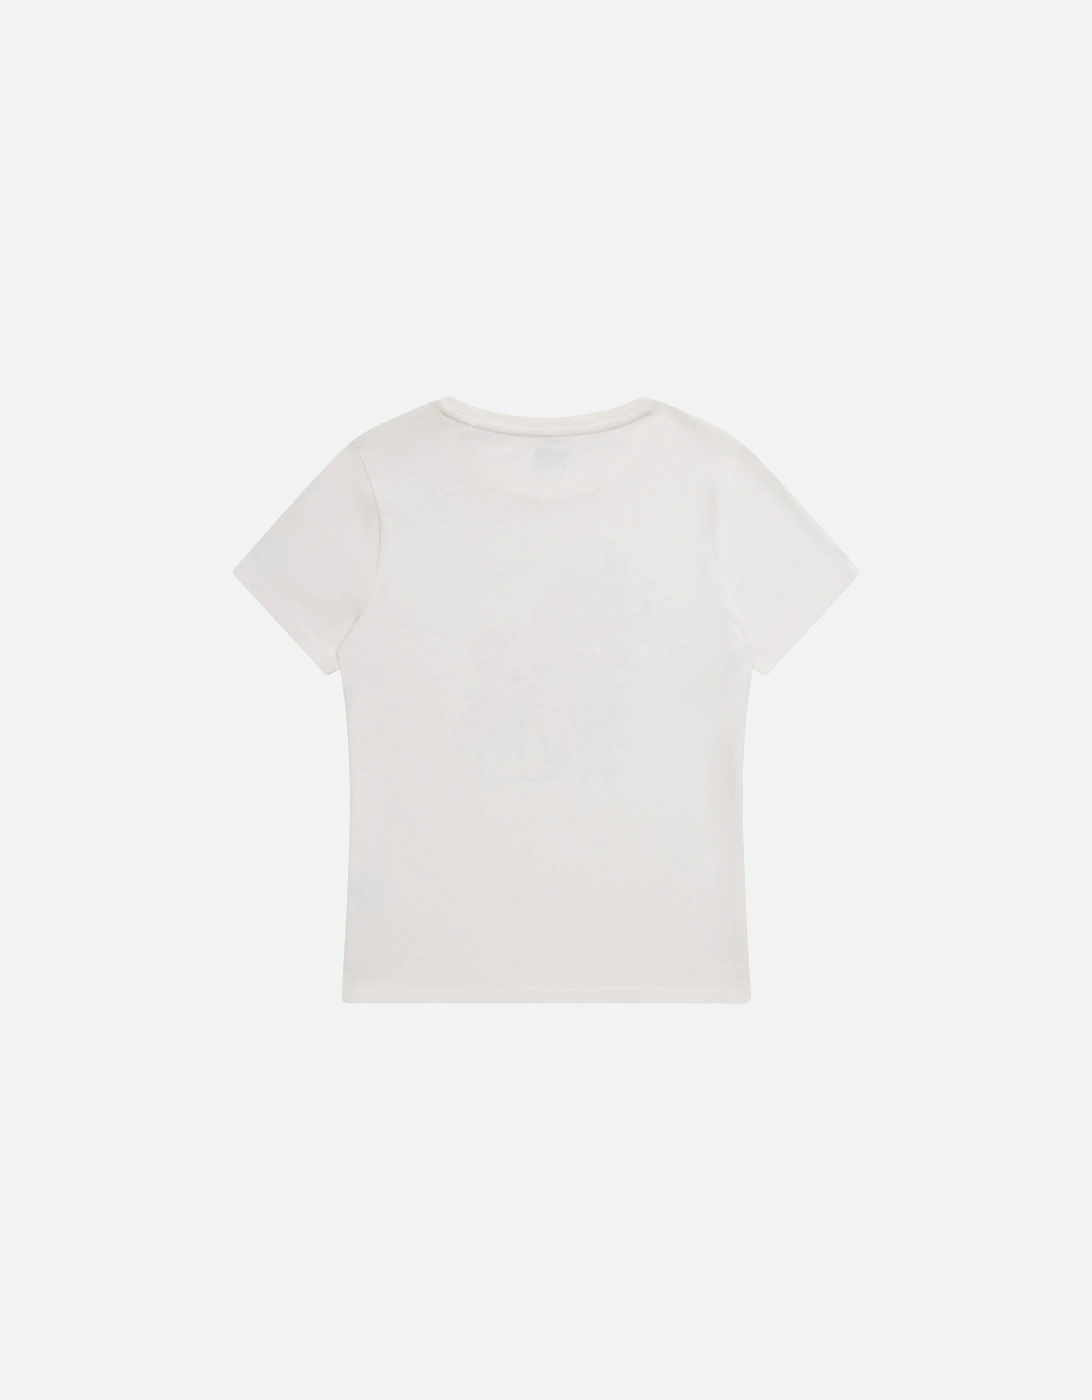 Womens/Ladies Carina Hibiscus Organic T-Shirt